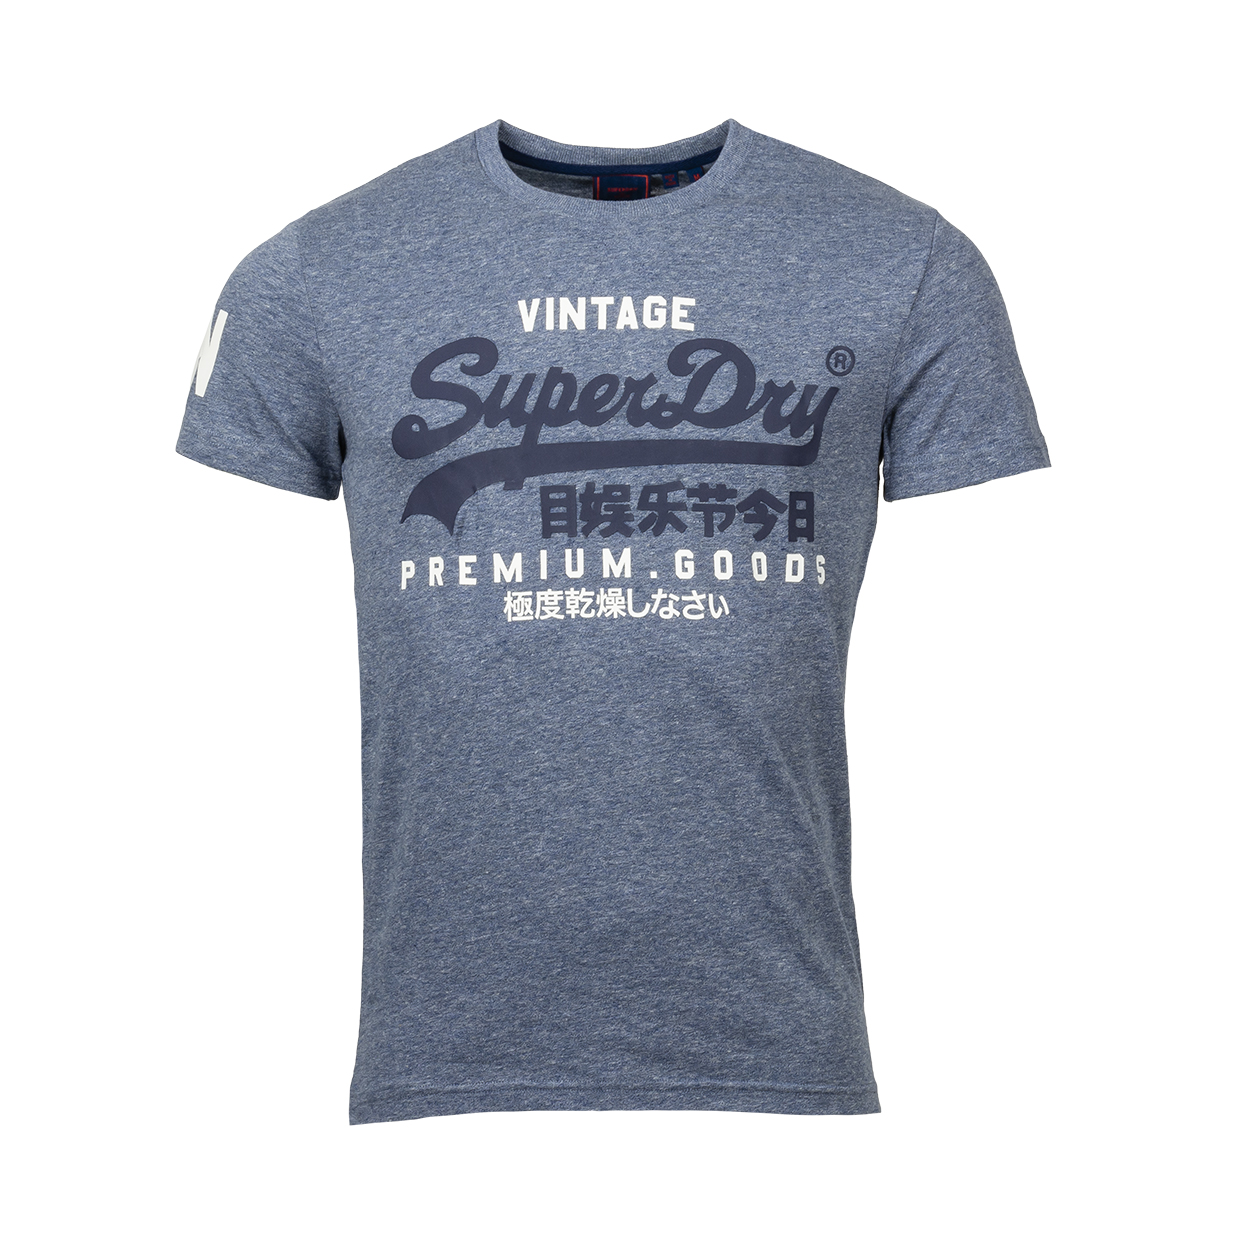 Tee-shirt col rond Superdry en coton mélangé bleu chiné floqué en bleu marine et blanc